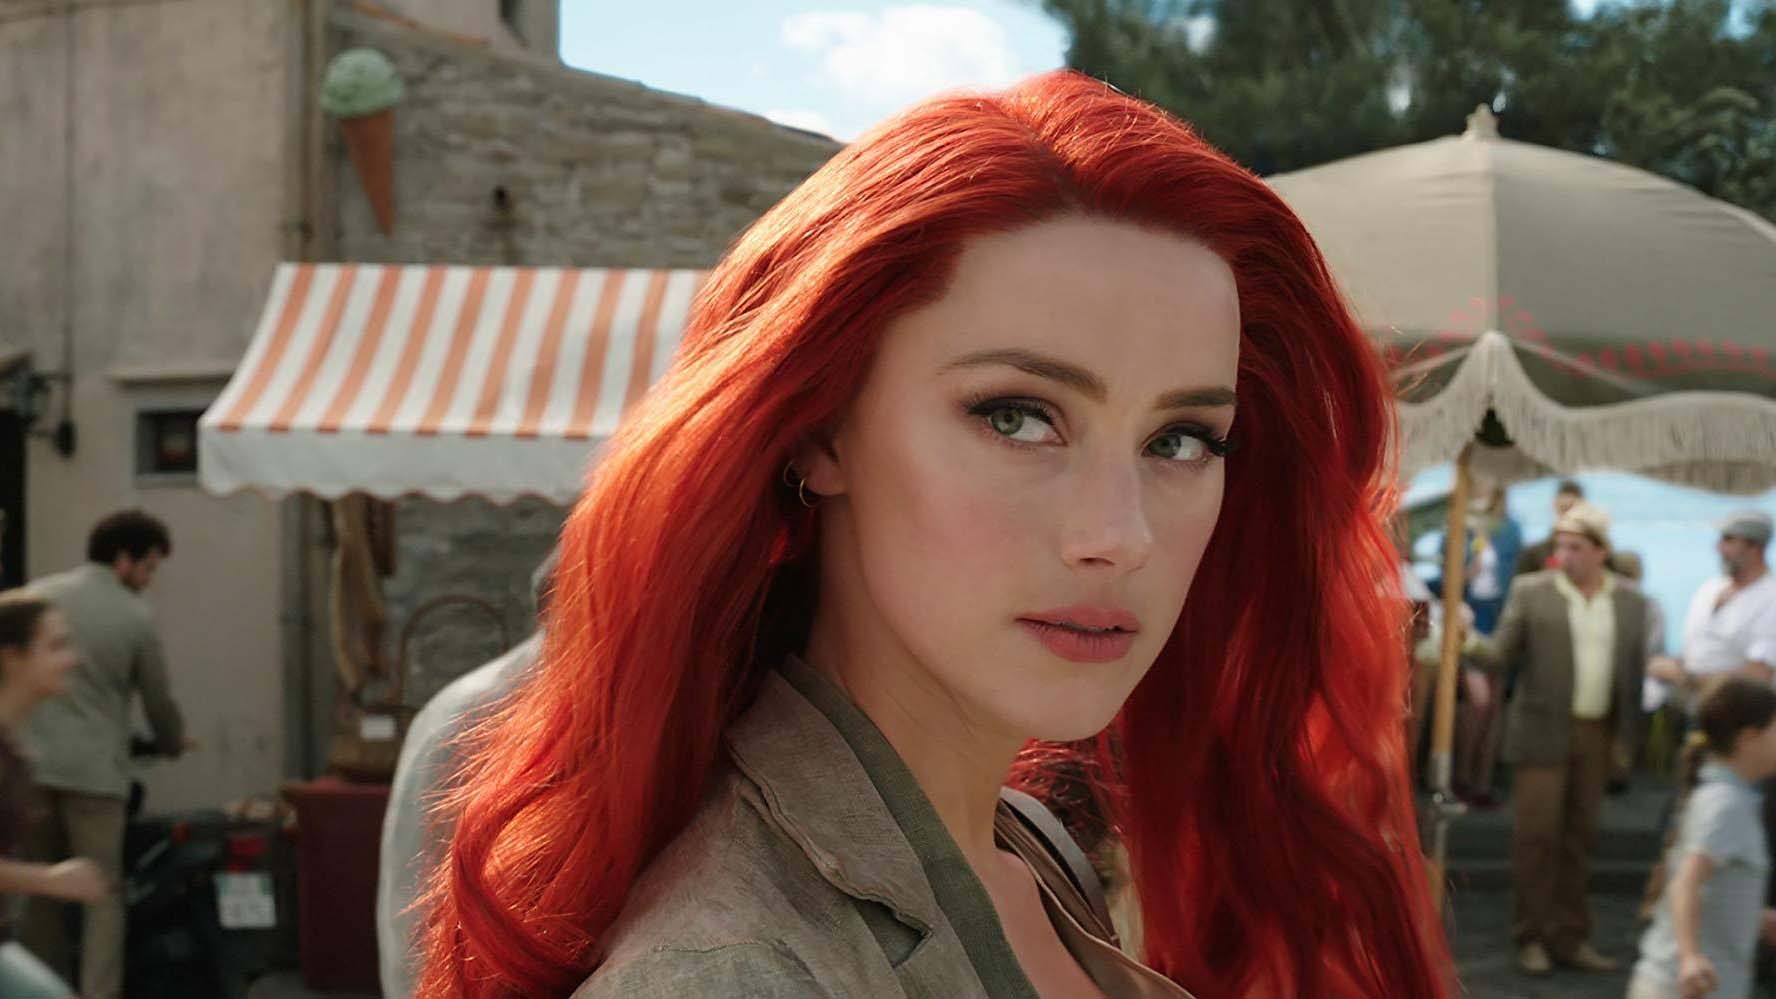 Petição para tirar Amber Heard de Aquaman 2 tem quase 1 milhão